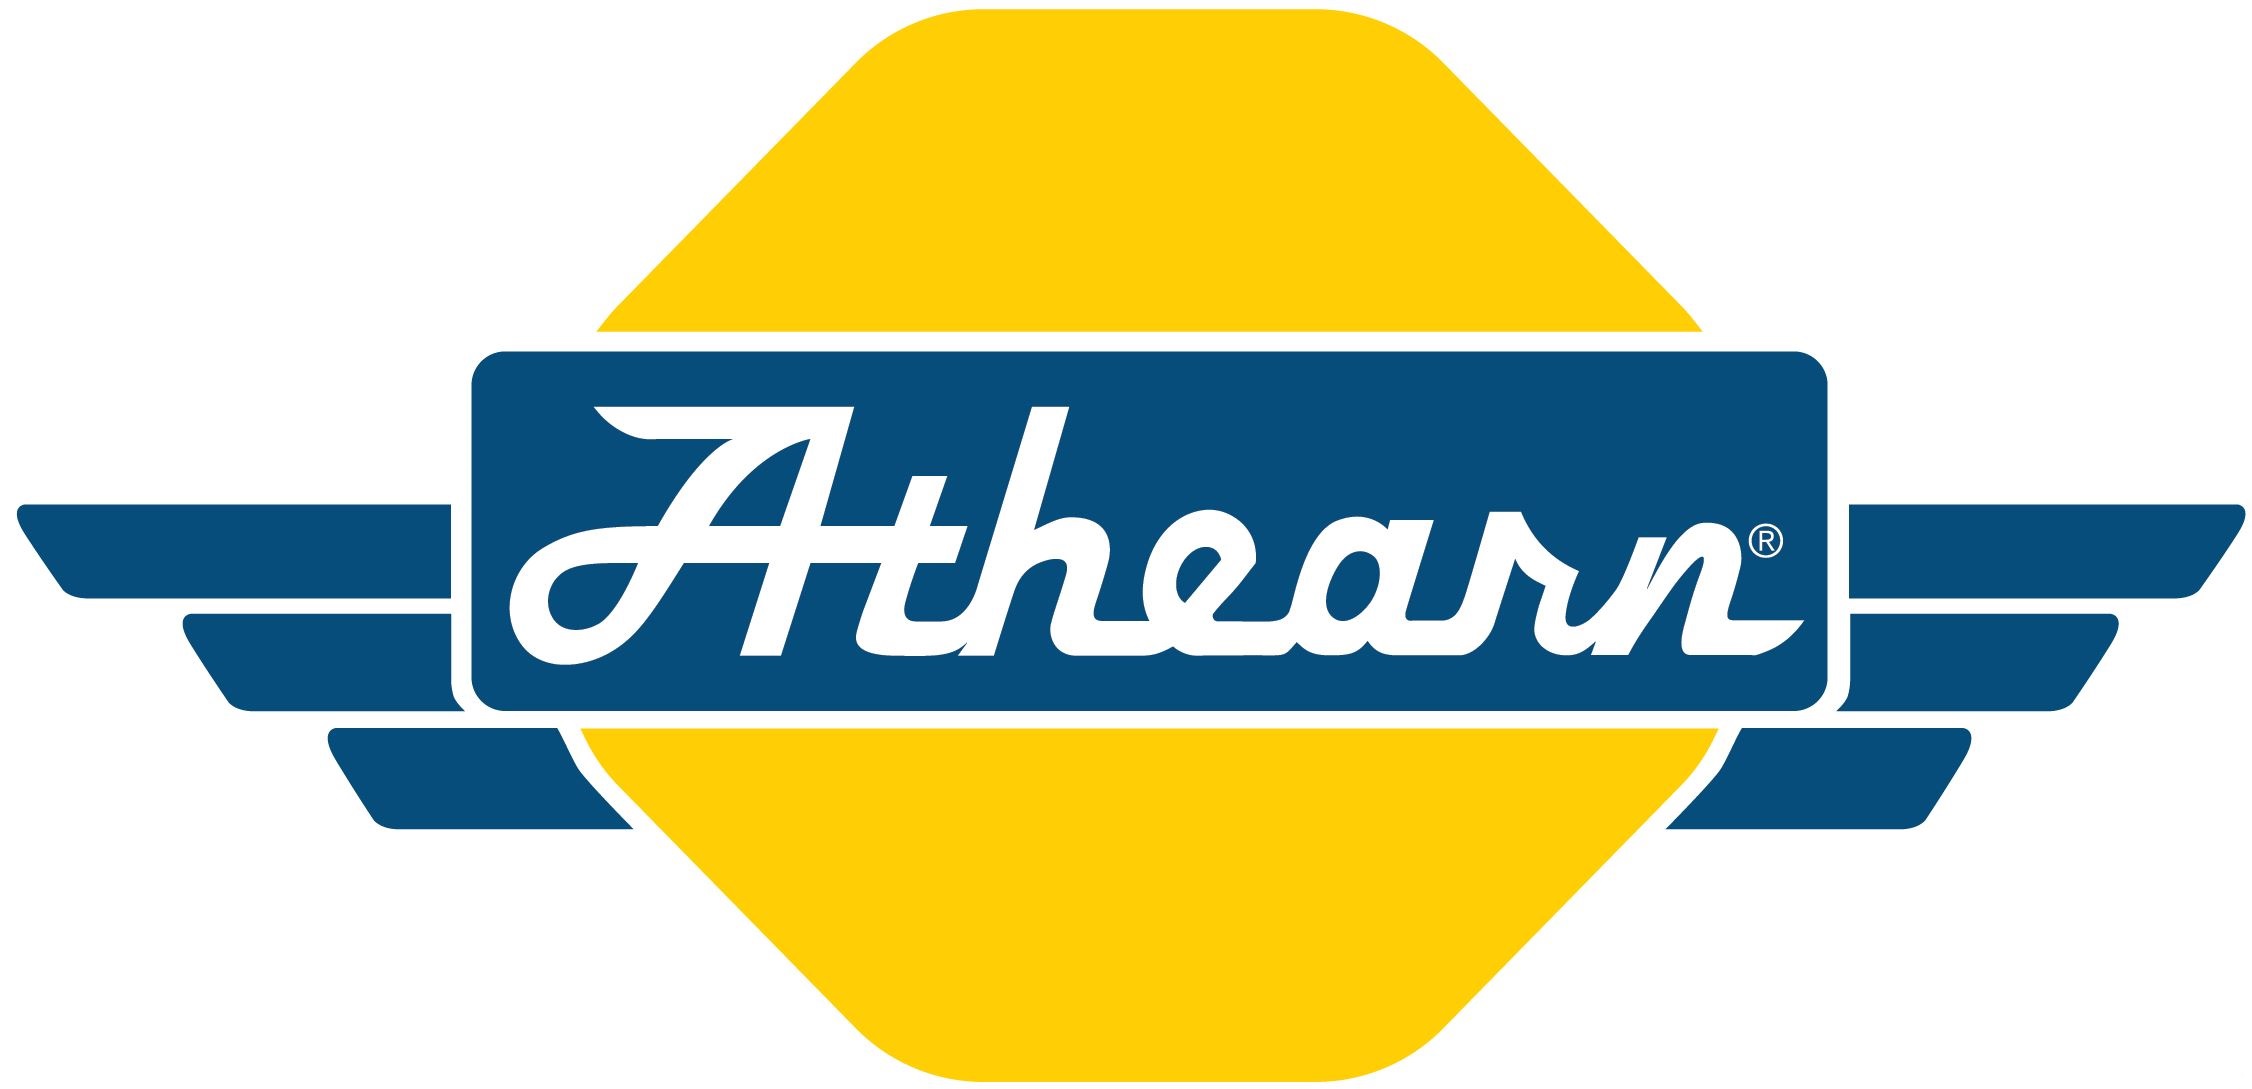 New Athearn Logo